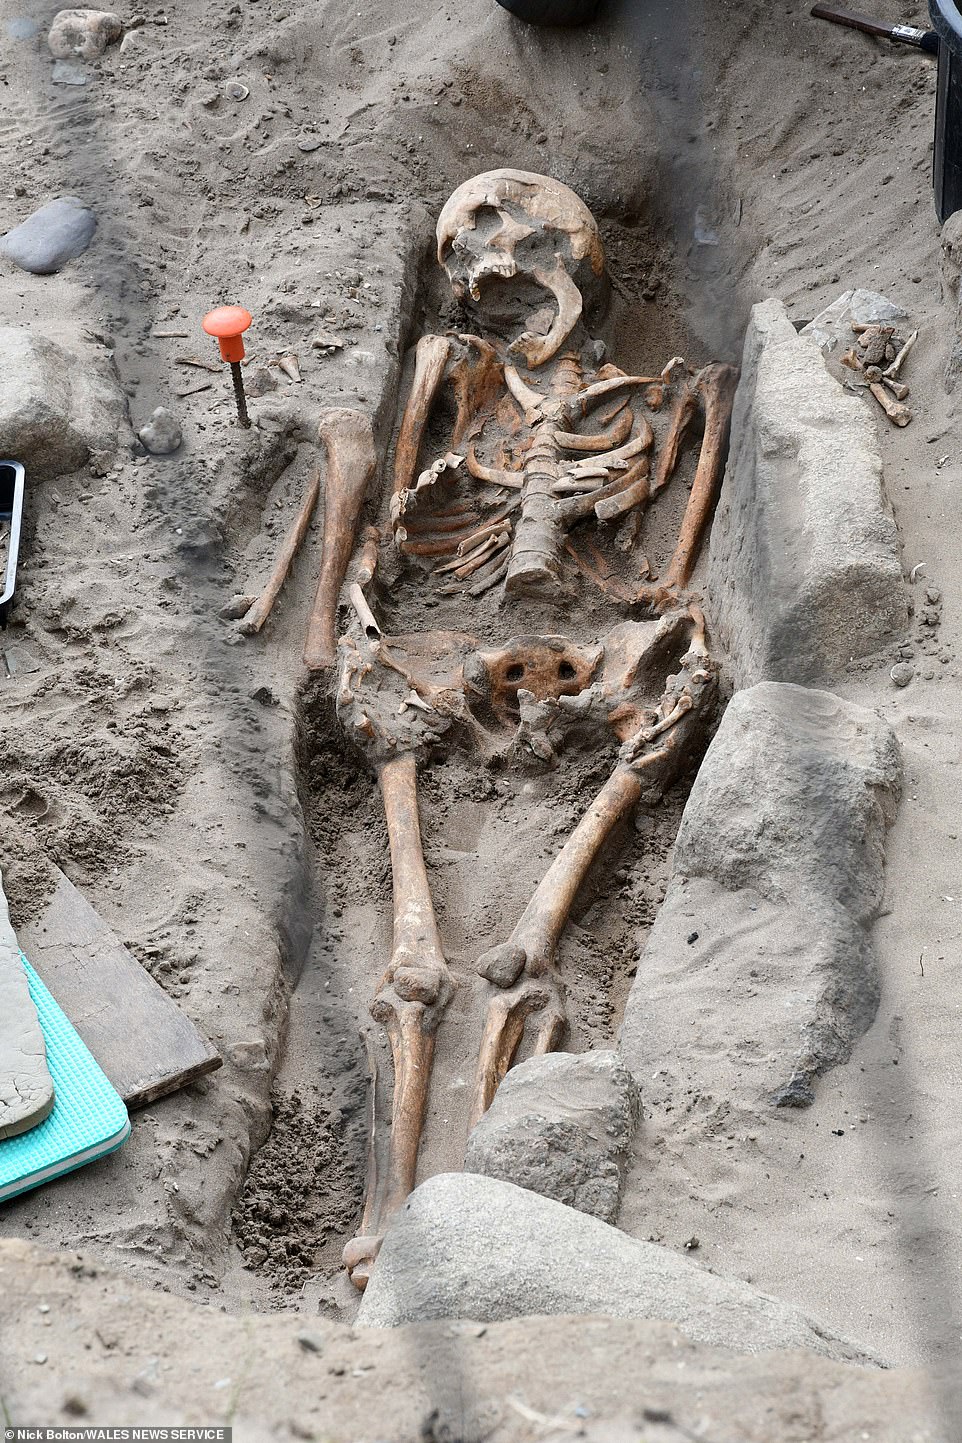 Se han encontrado hasta 200 esqueletos en total, a solo unos metros de la bahía de Whitesands.  La erosión natural y las tormentas expusieron las tumbas antes de que se llevaran a cabo los trabajos de excavación.